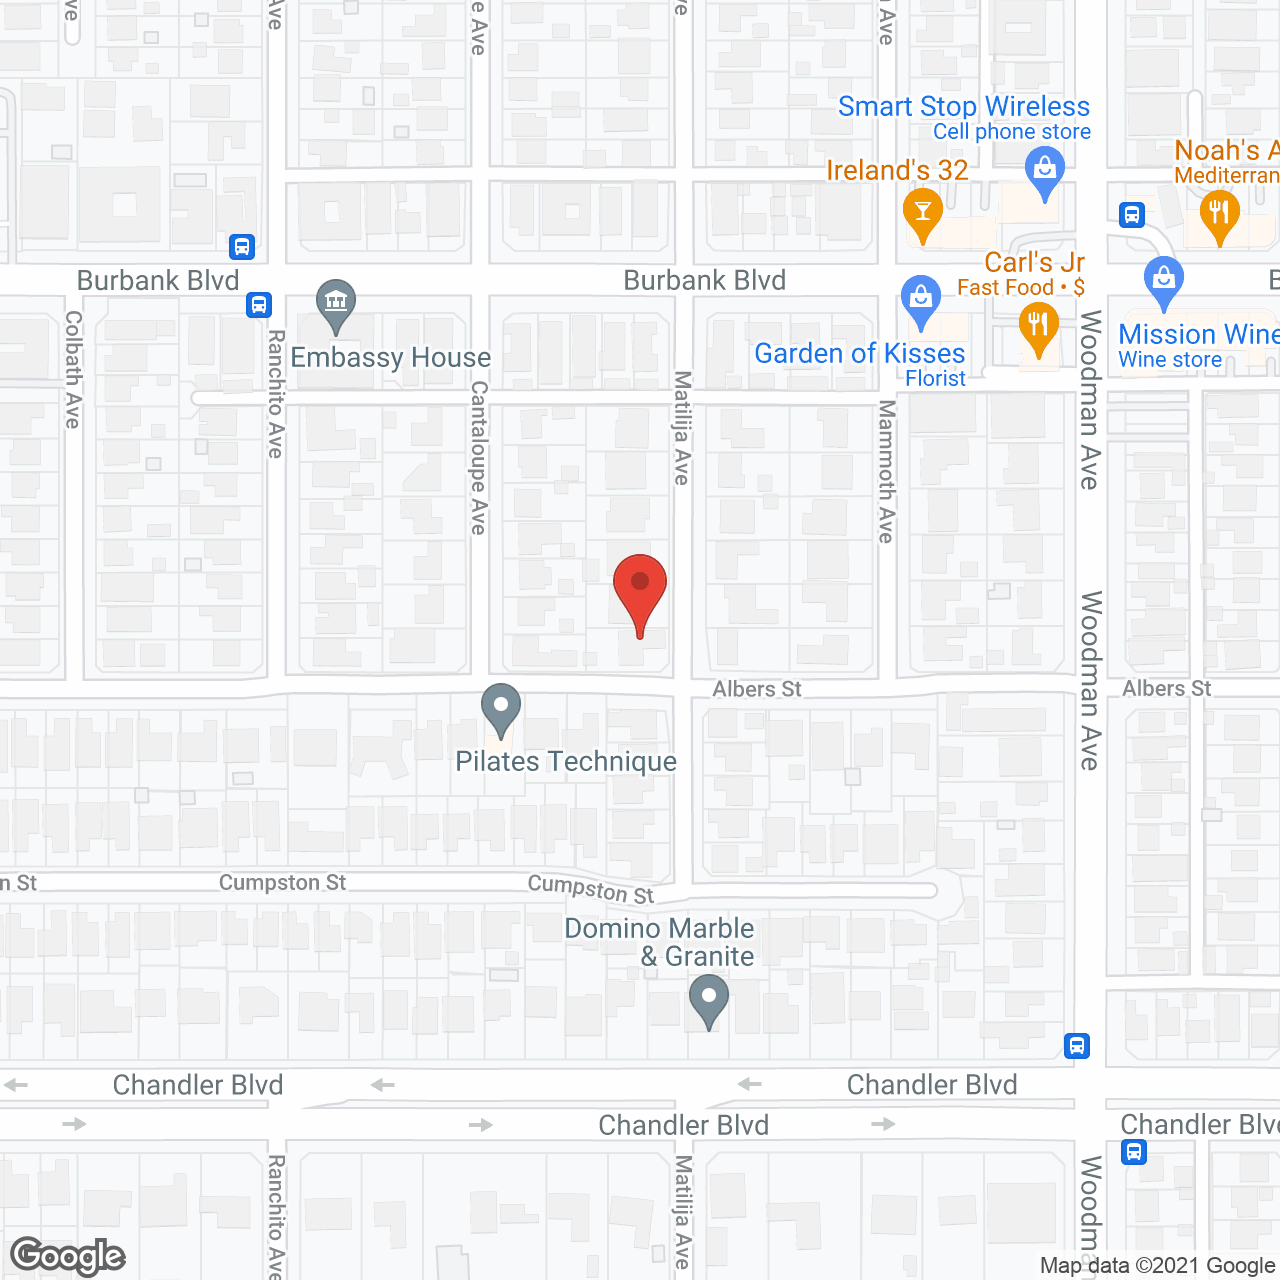 Sherman Oaks Gardens in google map